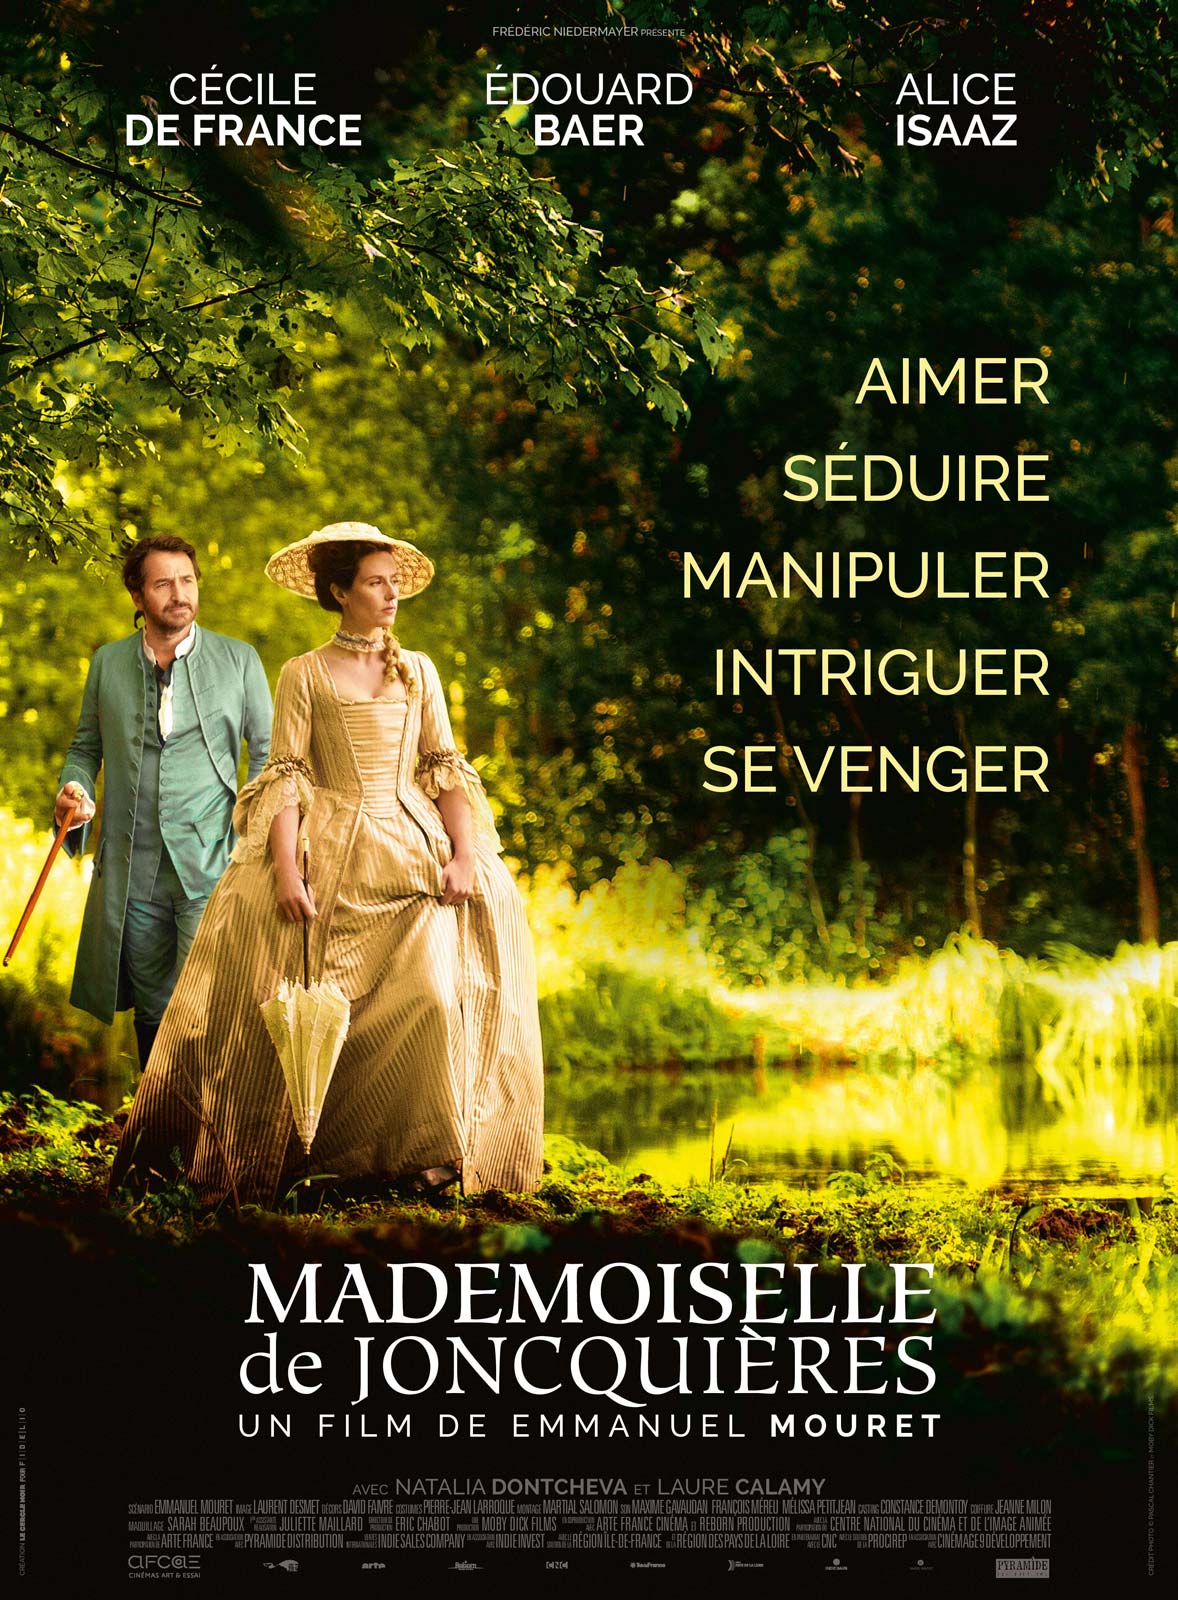 Mademoiselle de Joncquières en DVD : Mademoiselle de Joncquières - AlloCiné